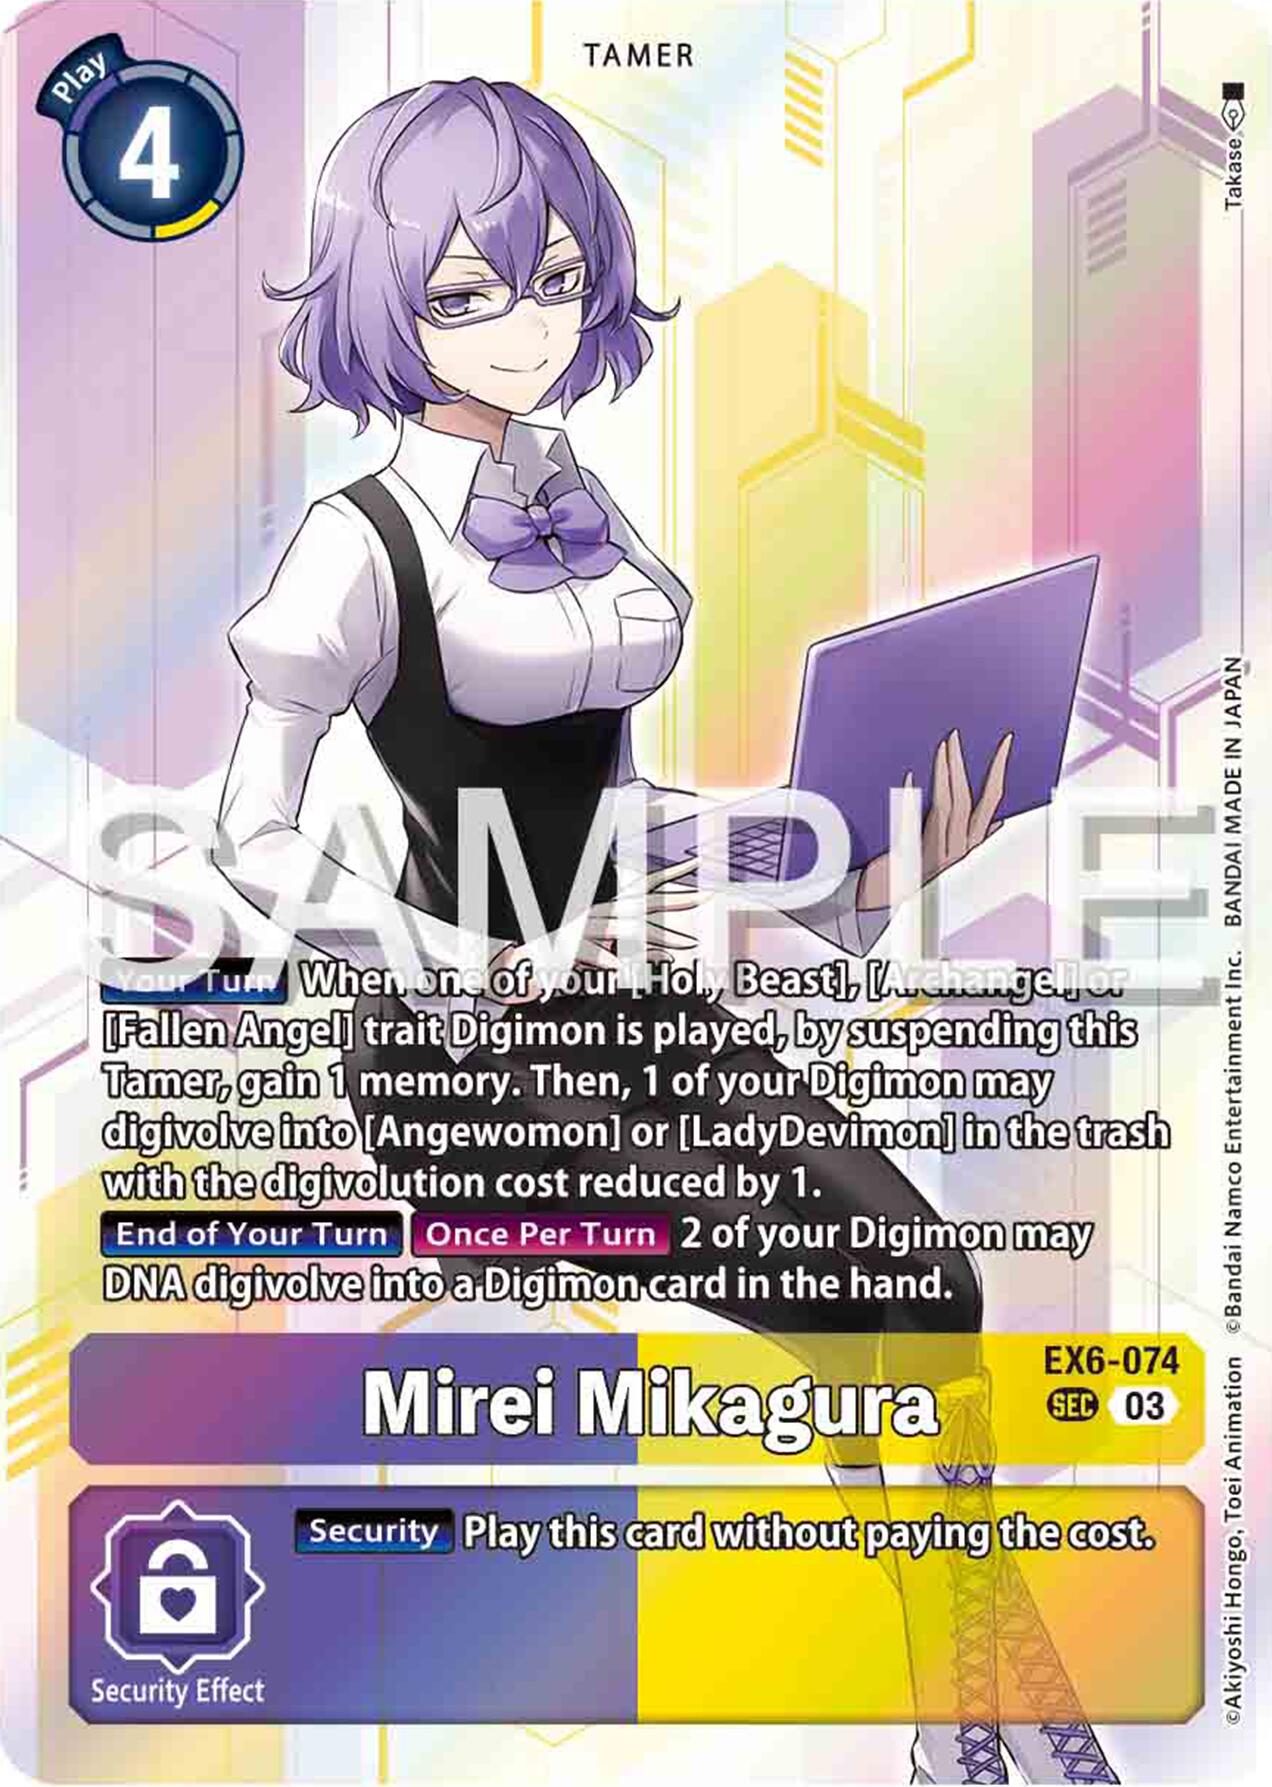 Mirei Mikagura [EX6-074] [Infernal Ascension] | Devastation Store